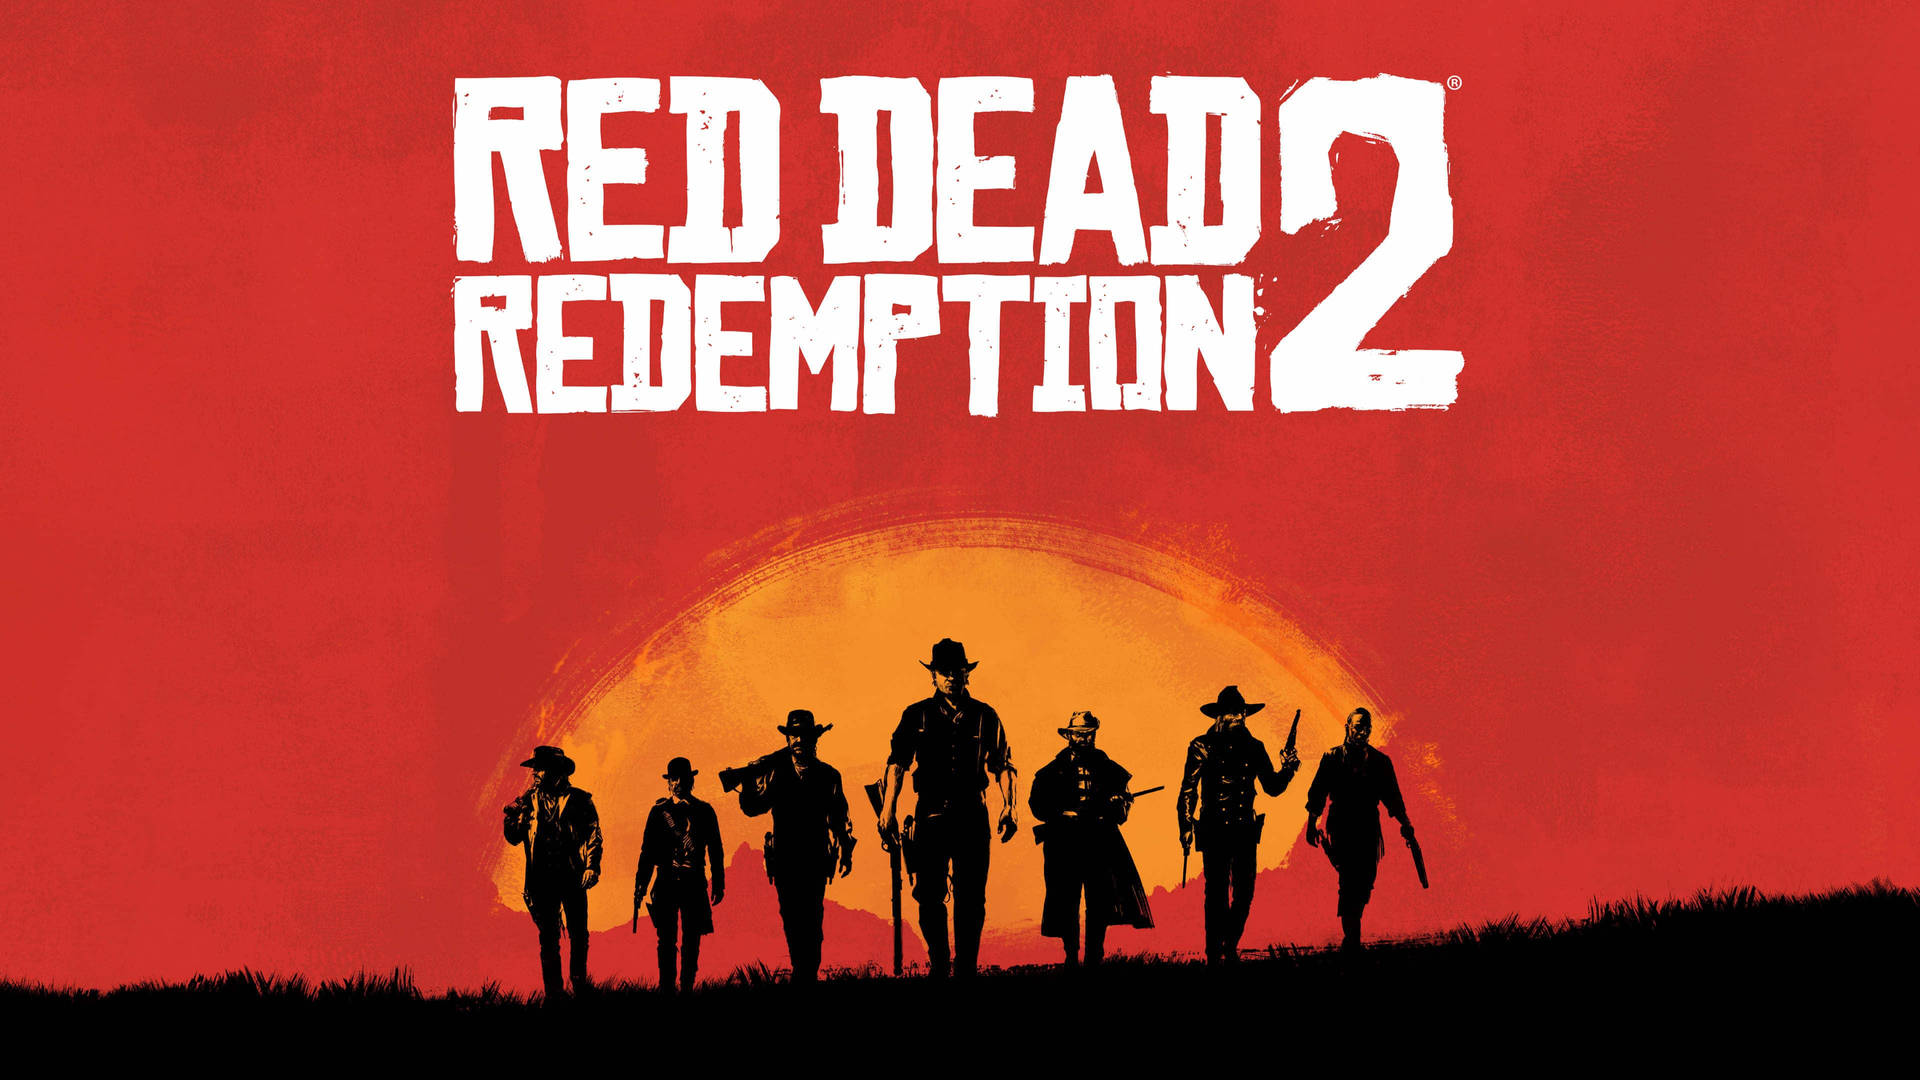 Làm mới máy tính của bạn với hình nền máy tính Red Dead Redemption 2 đầy màu sắc, tuyệt đẹp và miễn phí! Hàng trăm bức ảnh này sẽ đem đến cho bạn sự lựa chọn tuyệt vời để thể hiện cá tính và đem lại những suy nghĩ mới mẻ, cho dù bạn đang làm việc hay giải trí.